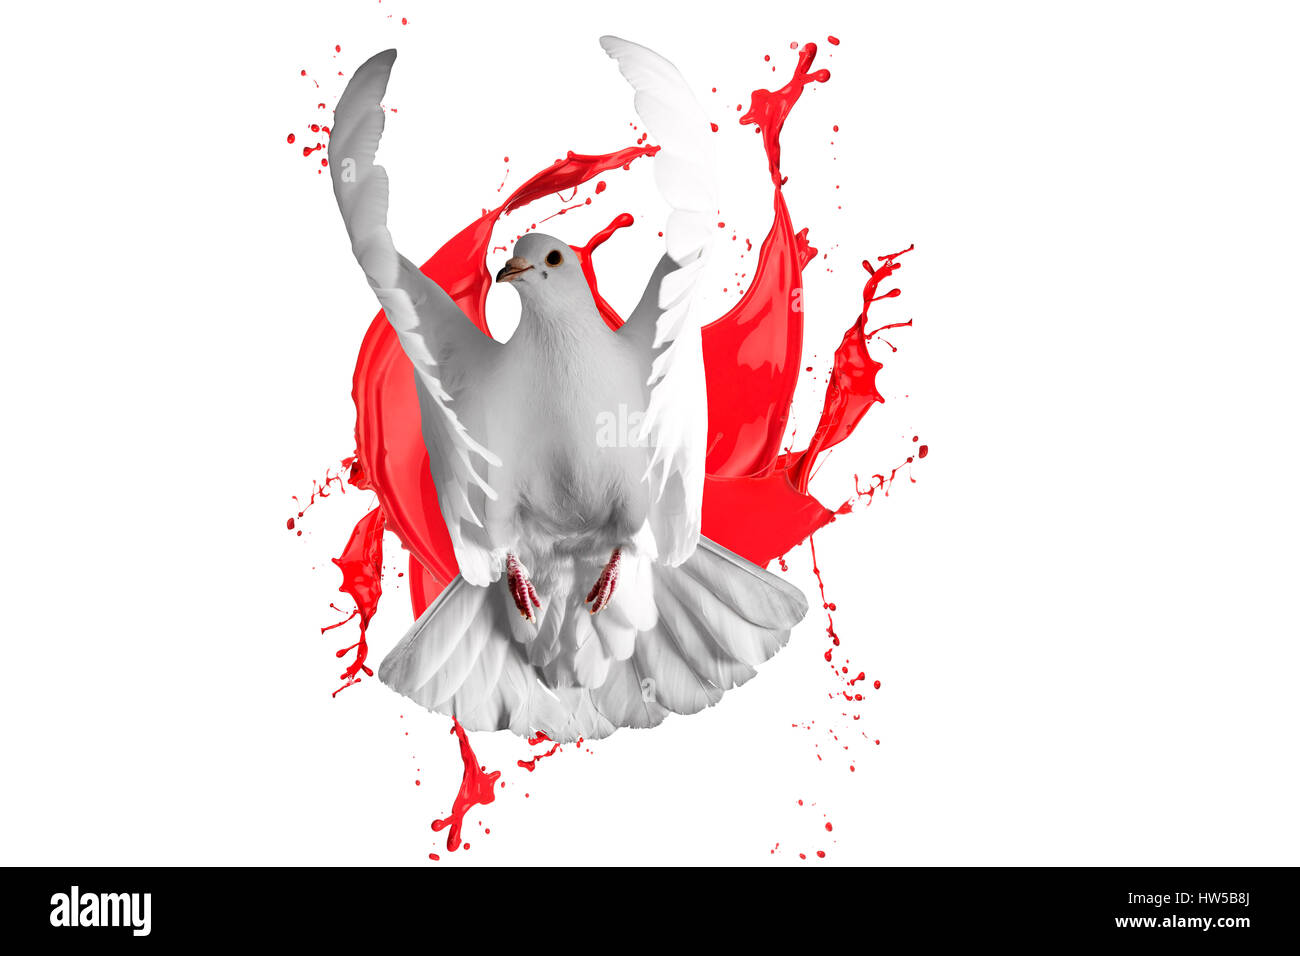 weiße Taube fliegen auf weißem Hintergrund und roter Farbe, Frühling,  Farben, schöne Farben, Drucke, Kunst, kreativ, Kosmetik, Werbetafeln, Laser  pr Stockfotografie - Alamy